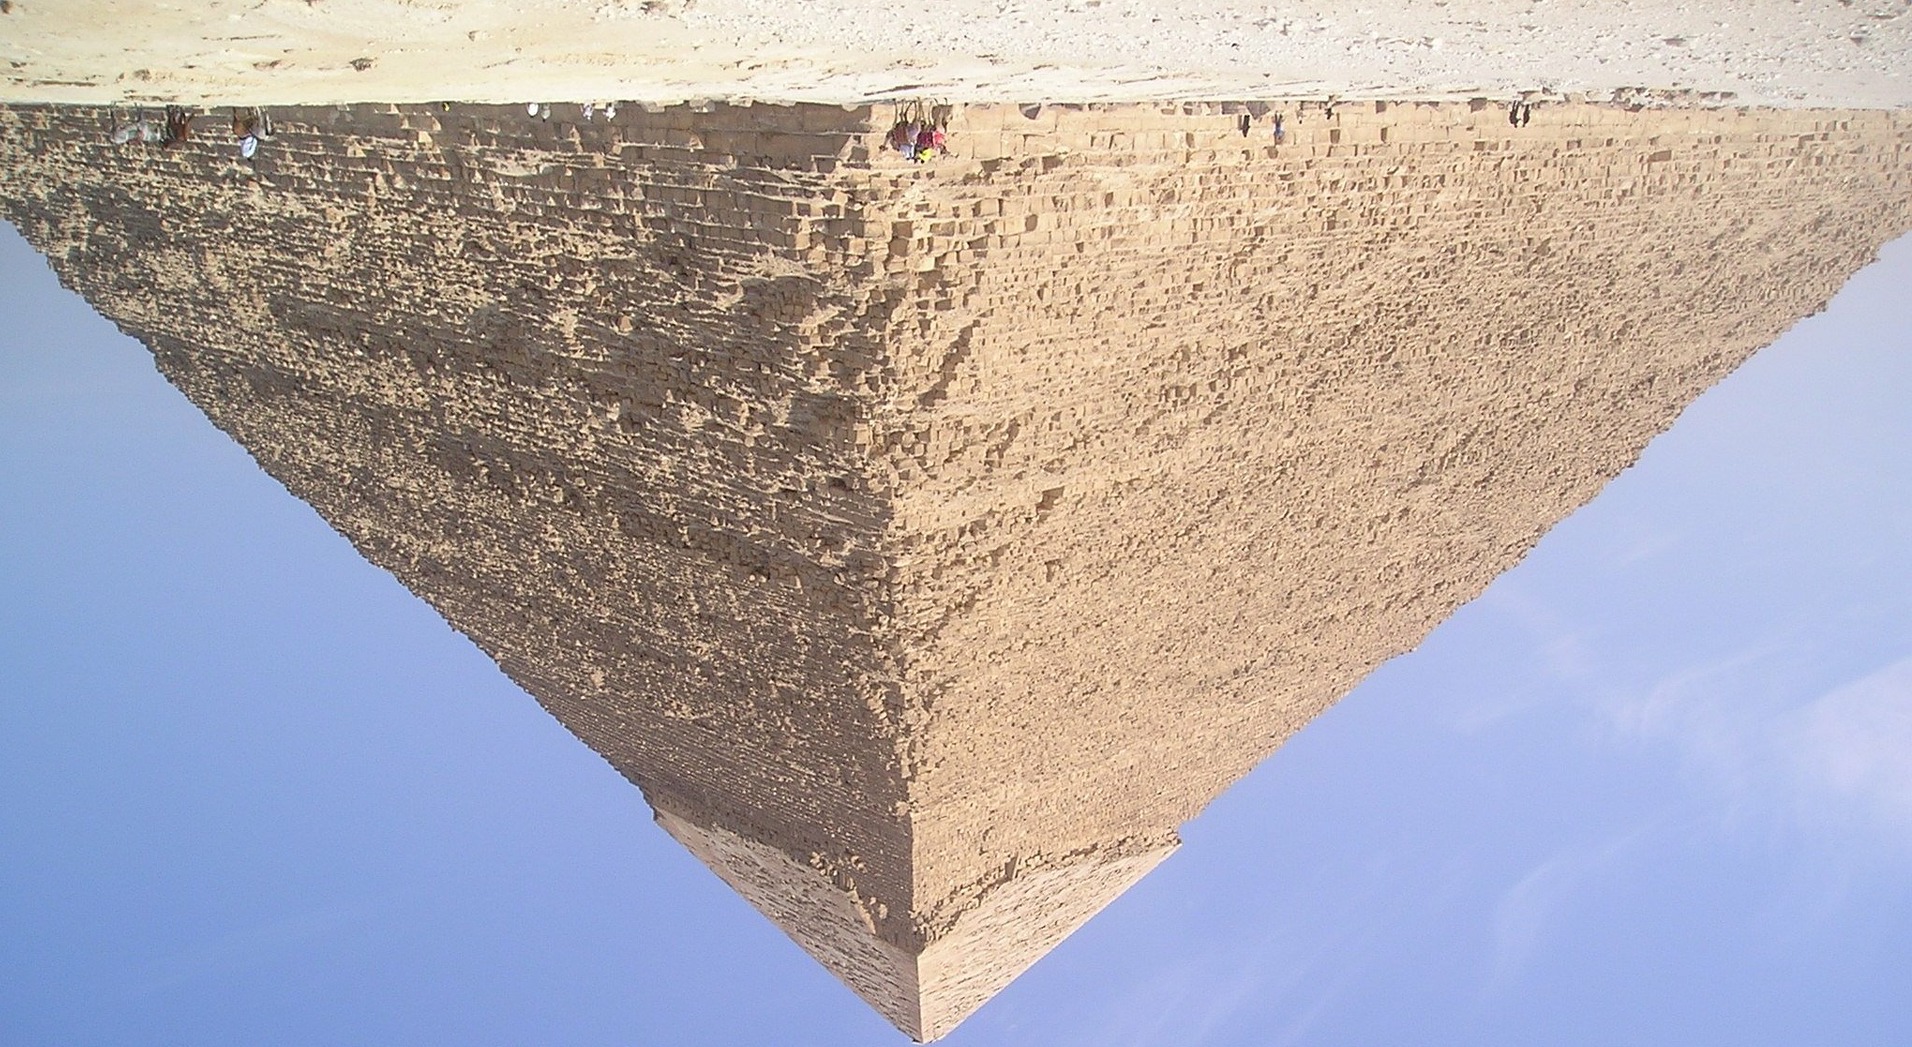 Otra perspectiva sobre la pirámide de Kefrén.